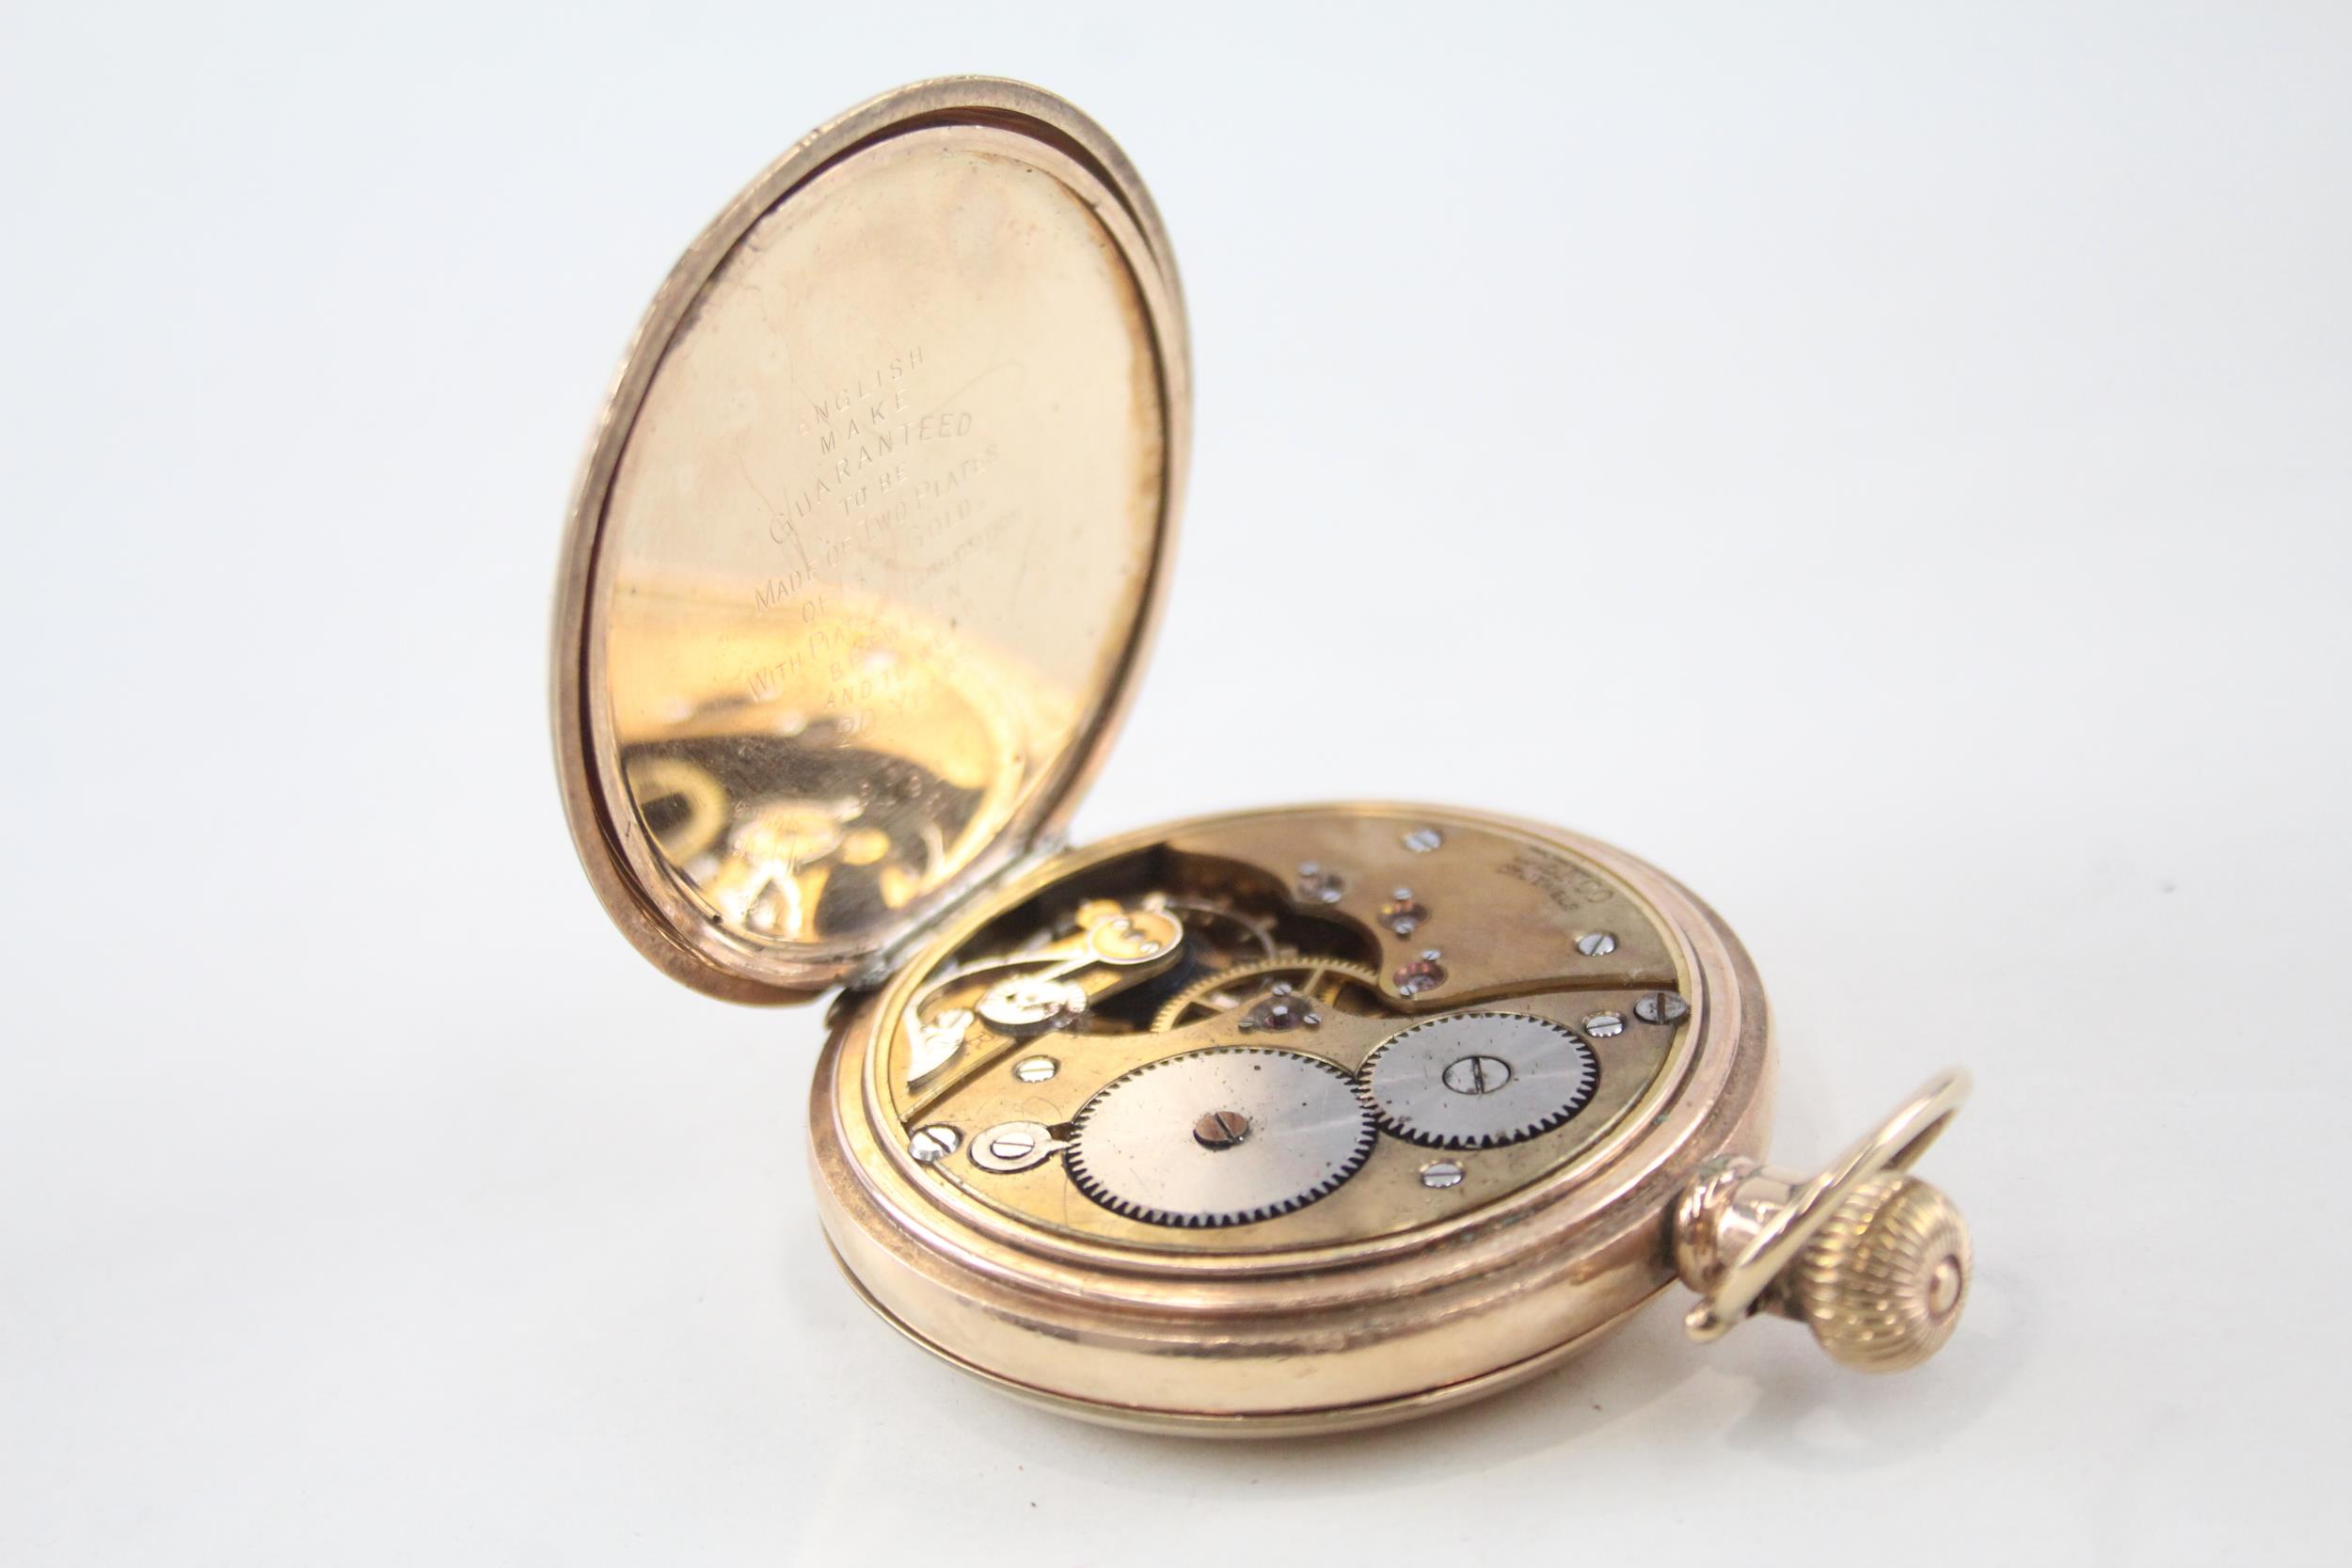 DENCO Gents Rolled Gold Full Hunter Pocket Watch Hand-wind WORKING - DENCO Gents Rolled Gold Full - Image 3 of 5